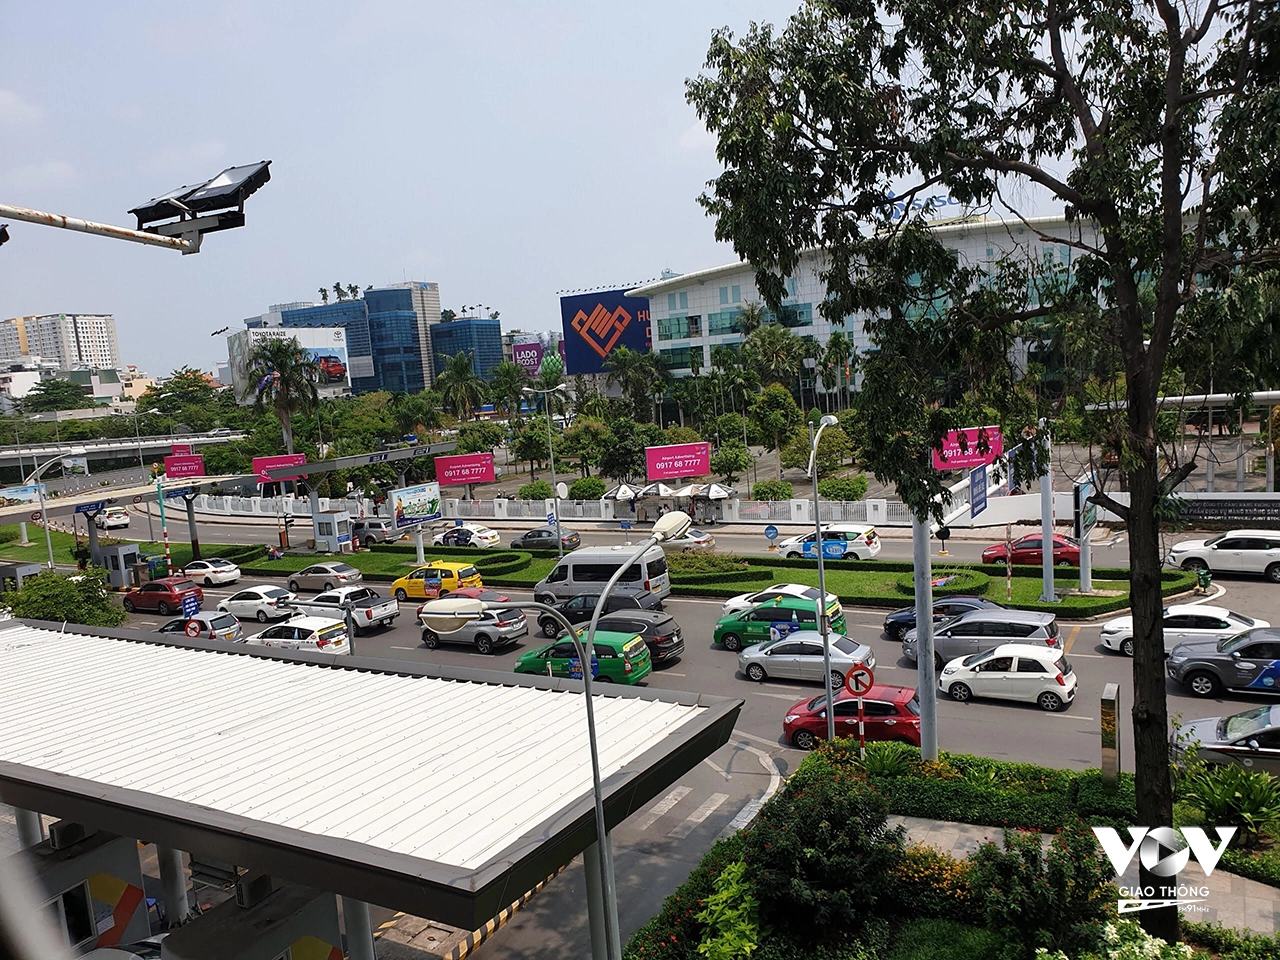 Để chuẩn bị cho cao điểm Tết, sân bay Tân Sơn Nhất cũng phối hợp các hãng taxi tăng số lượng xe cũng như các phương án điều phối nhằm giải tỏa khách